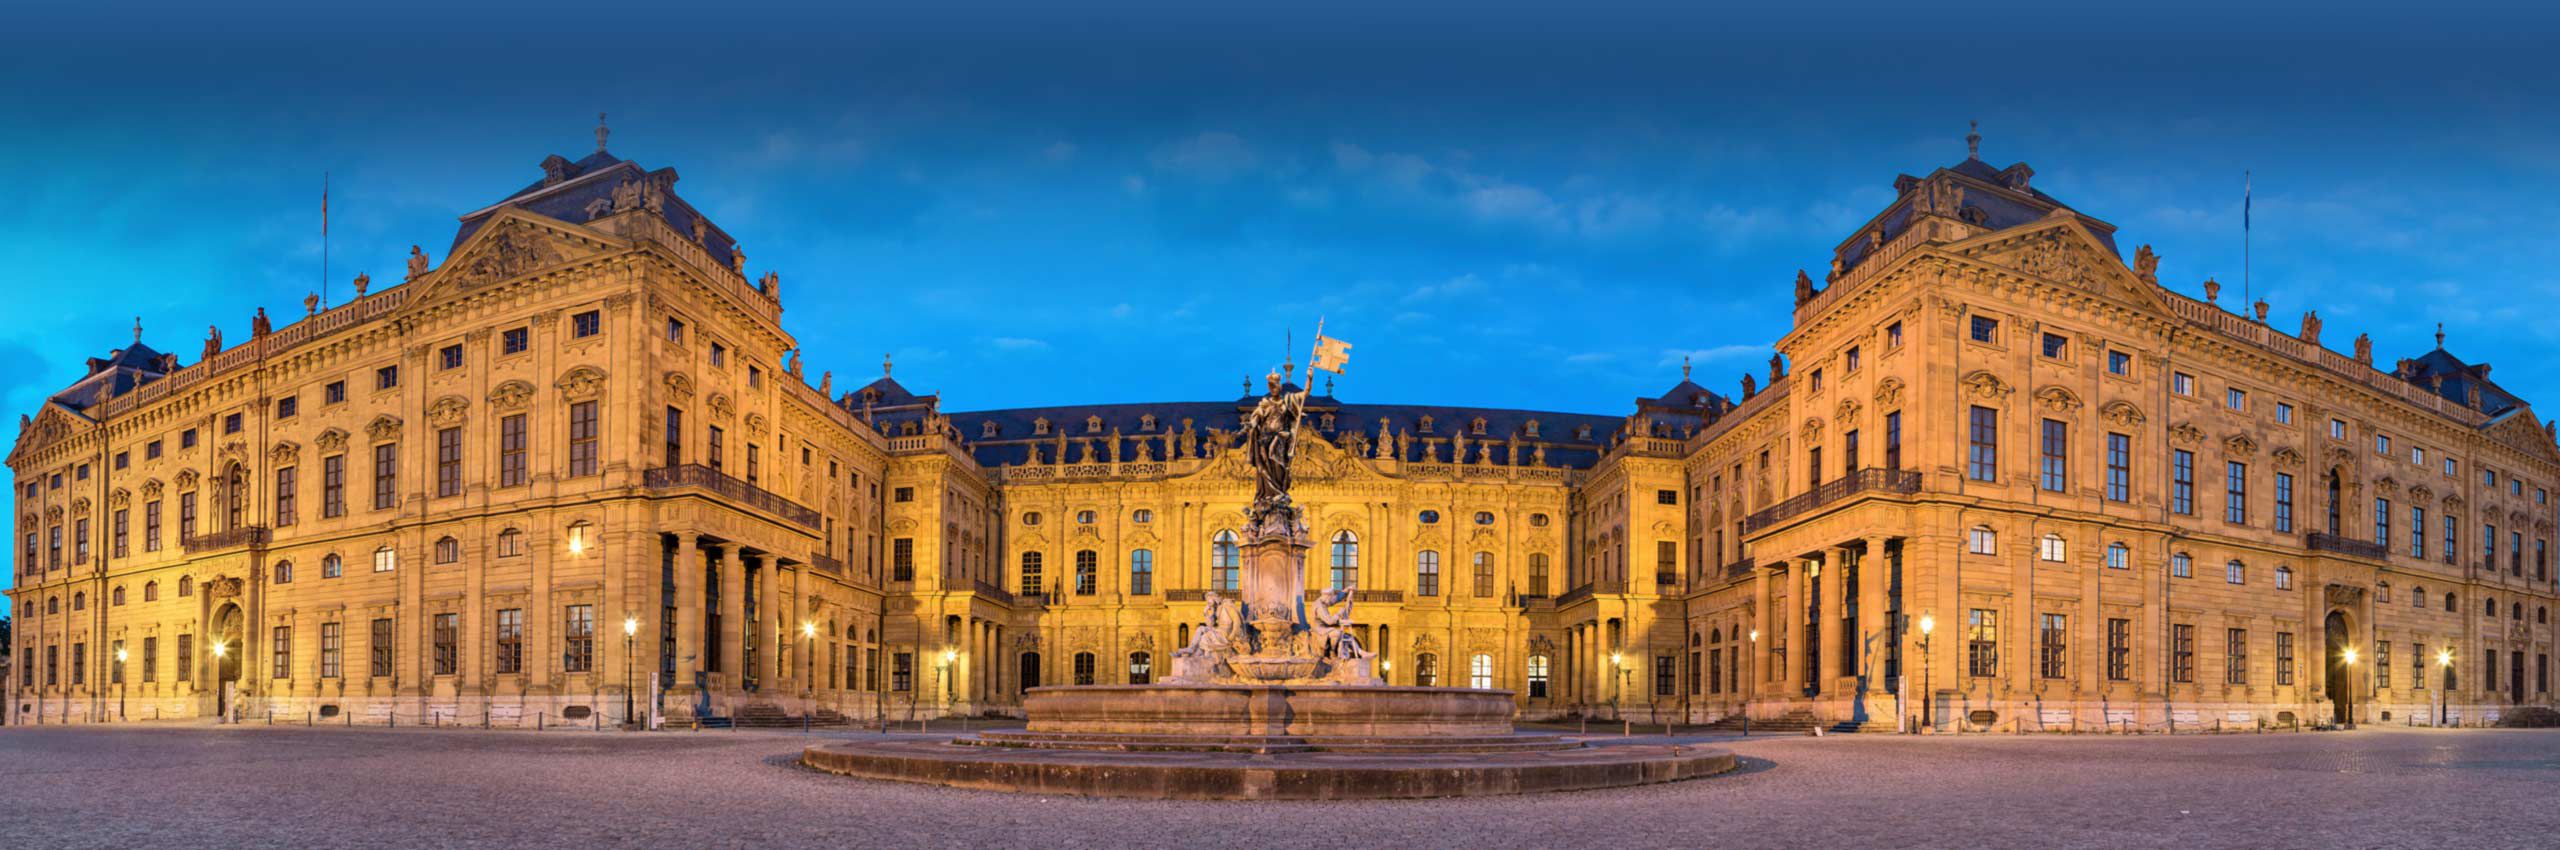 Würzburg Palace